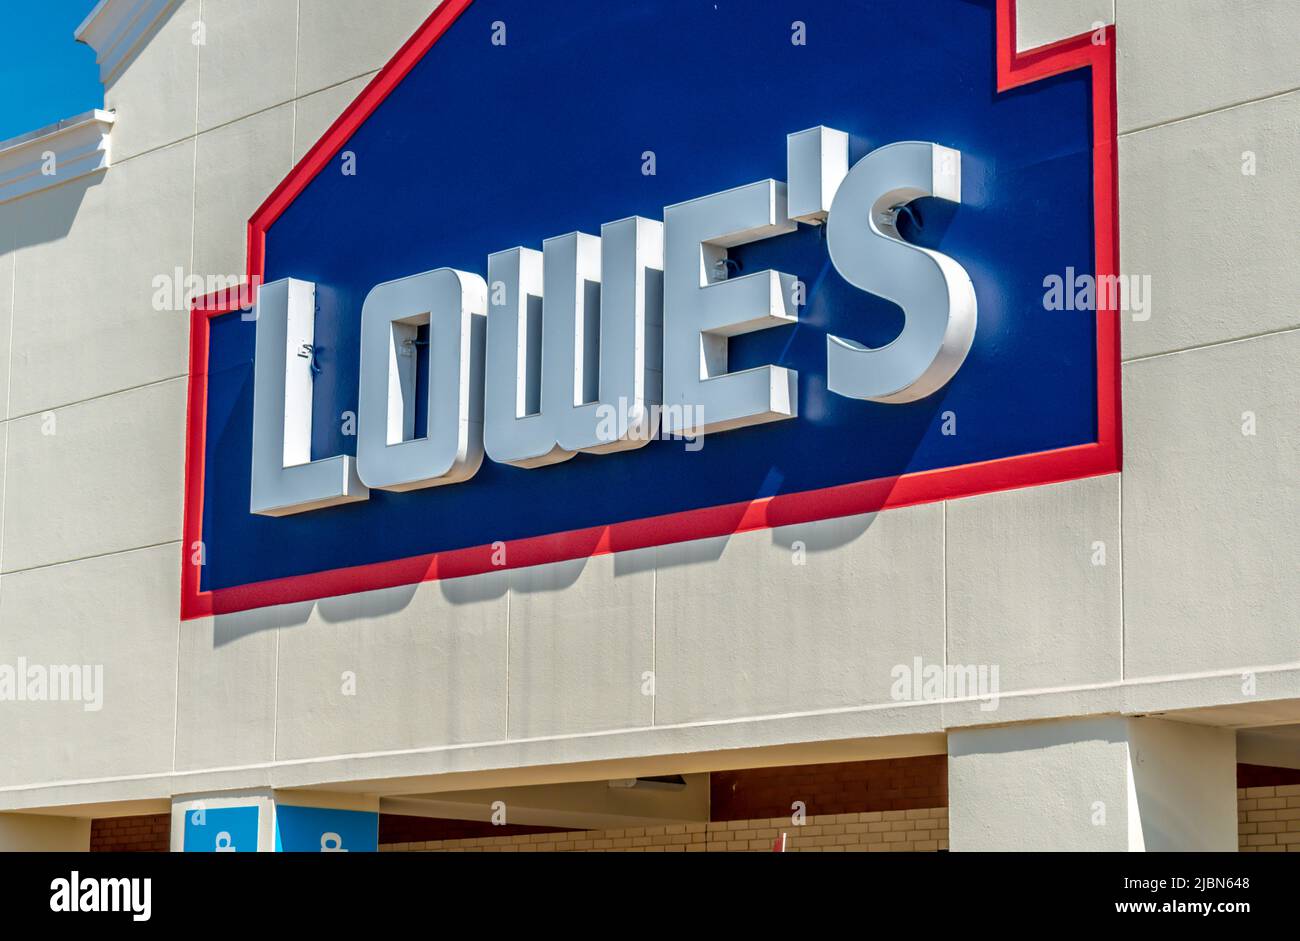 Die Fassadenmarke und das Logo von Lowe's Home Improvement Store in dreidimensionalen, weißen Buchstaben auf dunkelblauem Hintergrund bei sonnigem Tageslicht. Stockfoto